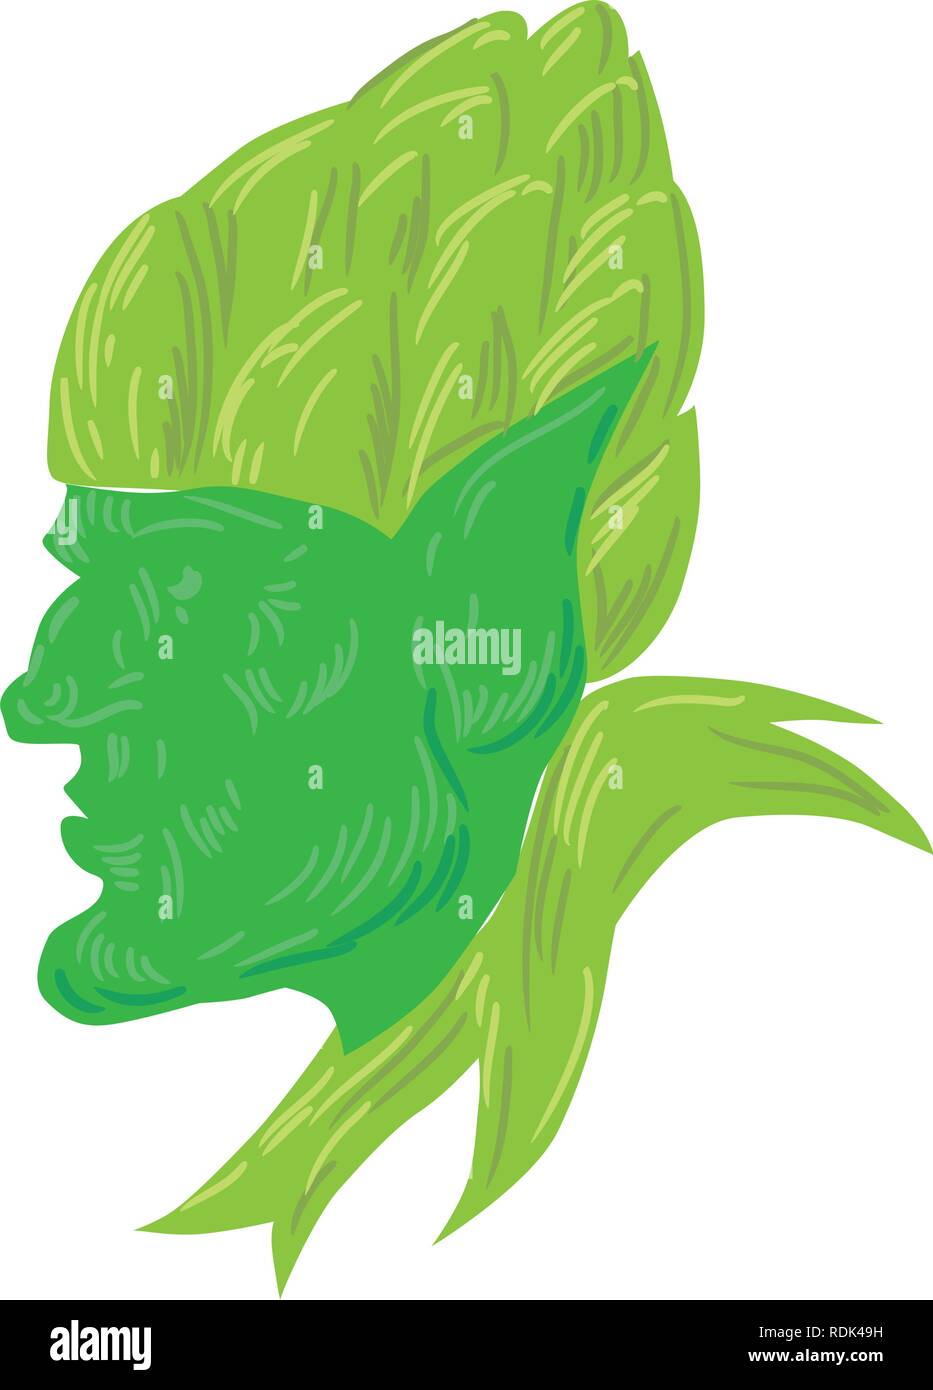 Zeichnung Skizze stil Abbildung eines grünen elf, eine menschliche-förmige übernatürlichen Wesen in der germanischen Mythologie und Folklore auf Seite trägt ein Hopfen Stock Vektor